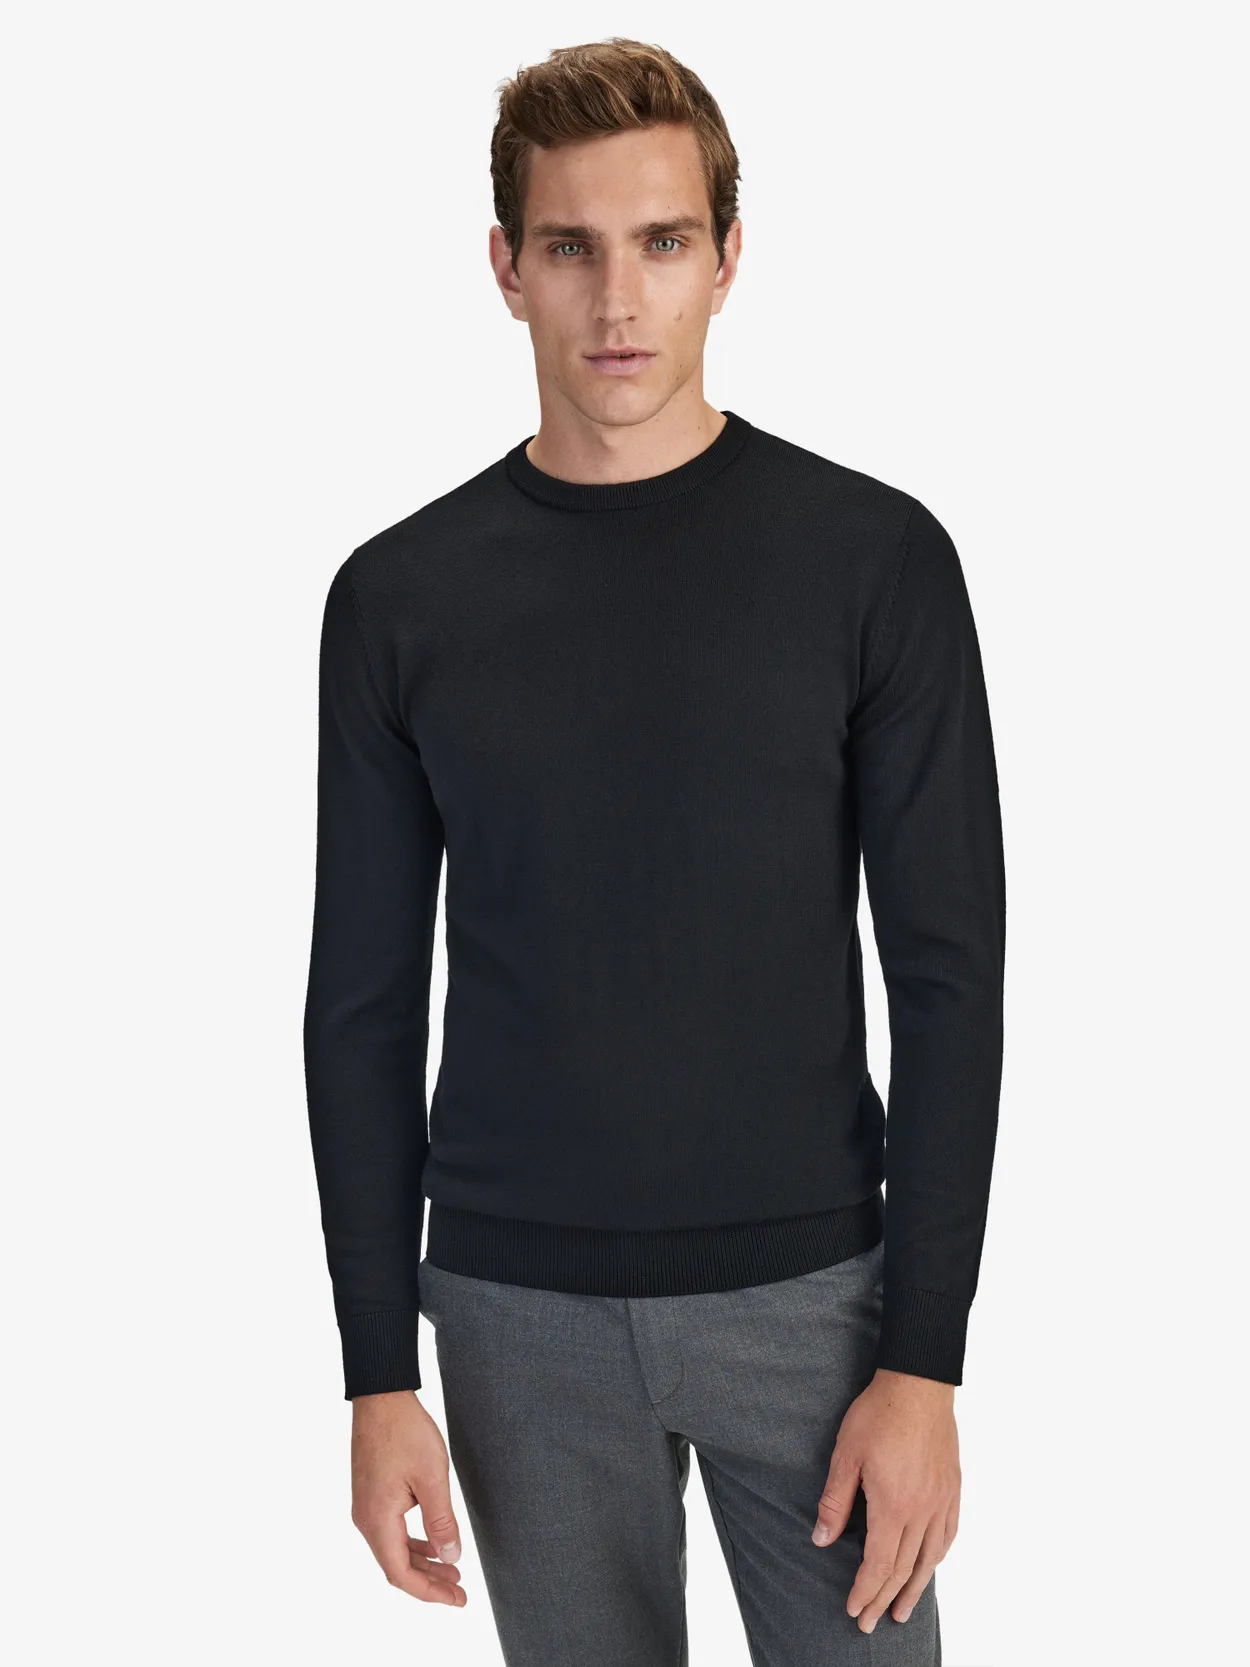 Black Sweater Merino